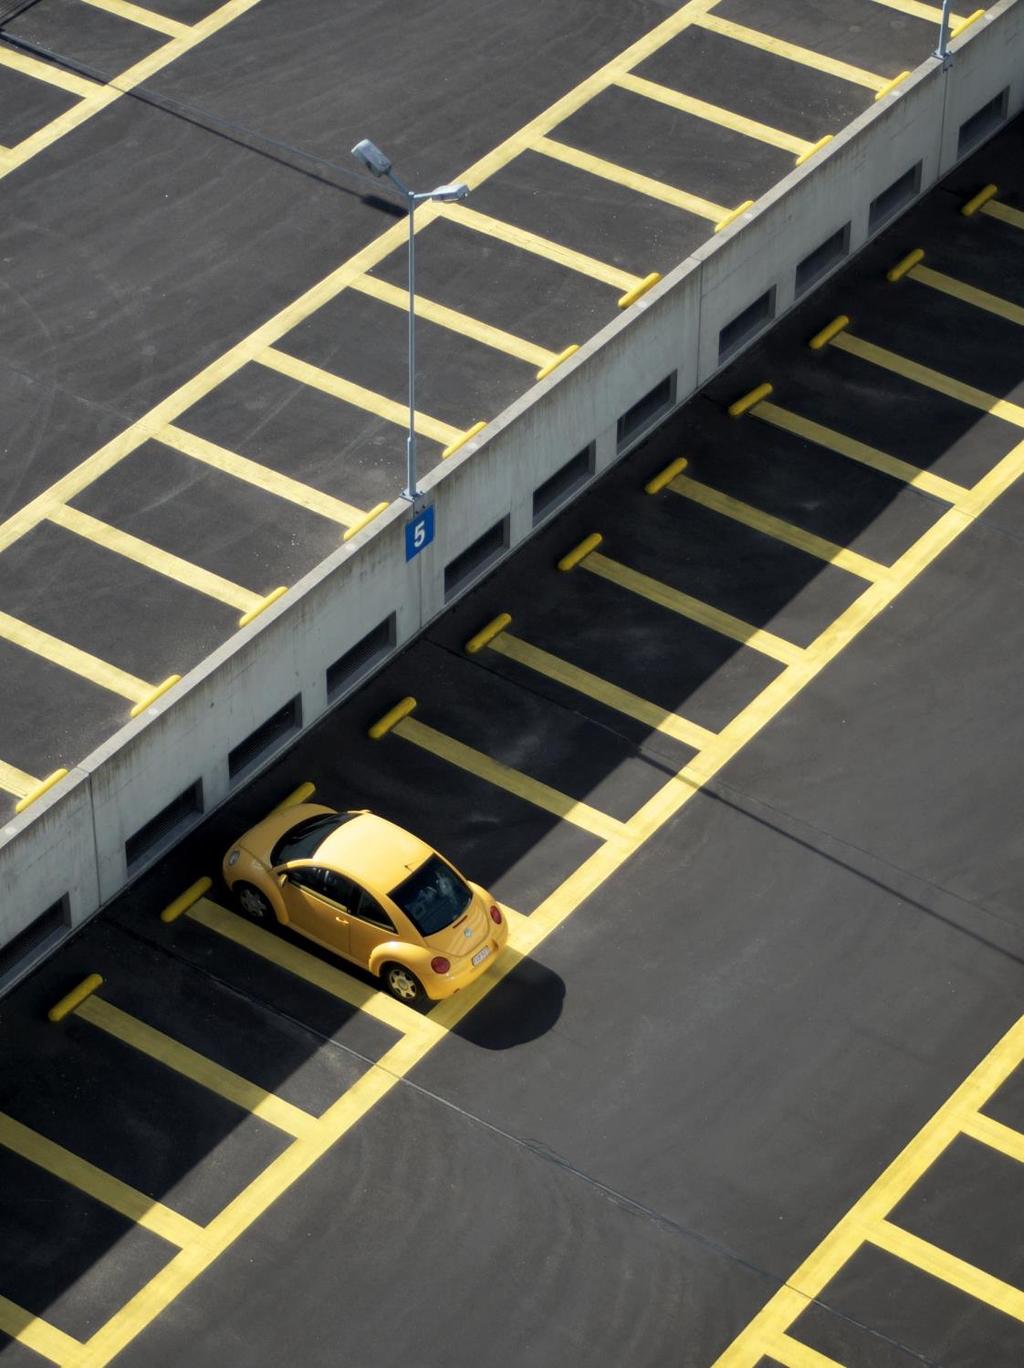 ESTACIONAMENTO Unicard Campus permite o controlo dos acessos aos parques de estacionamento através da instalação de barreiras de acesso e da utilização da credencial de identificação do utilizador,